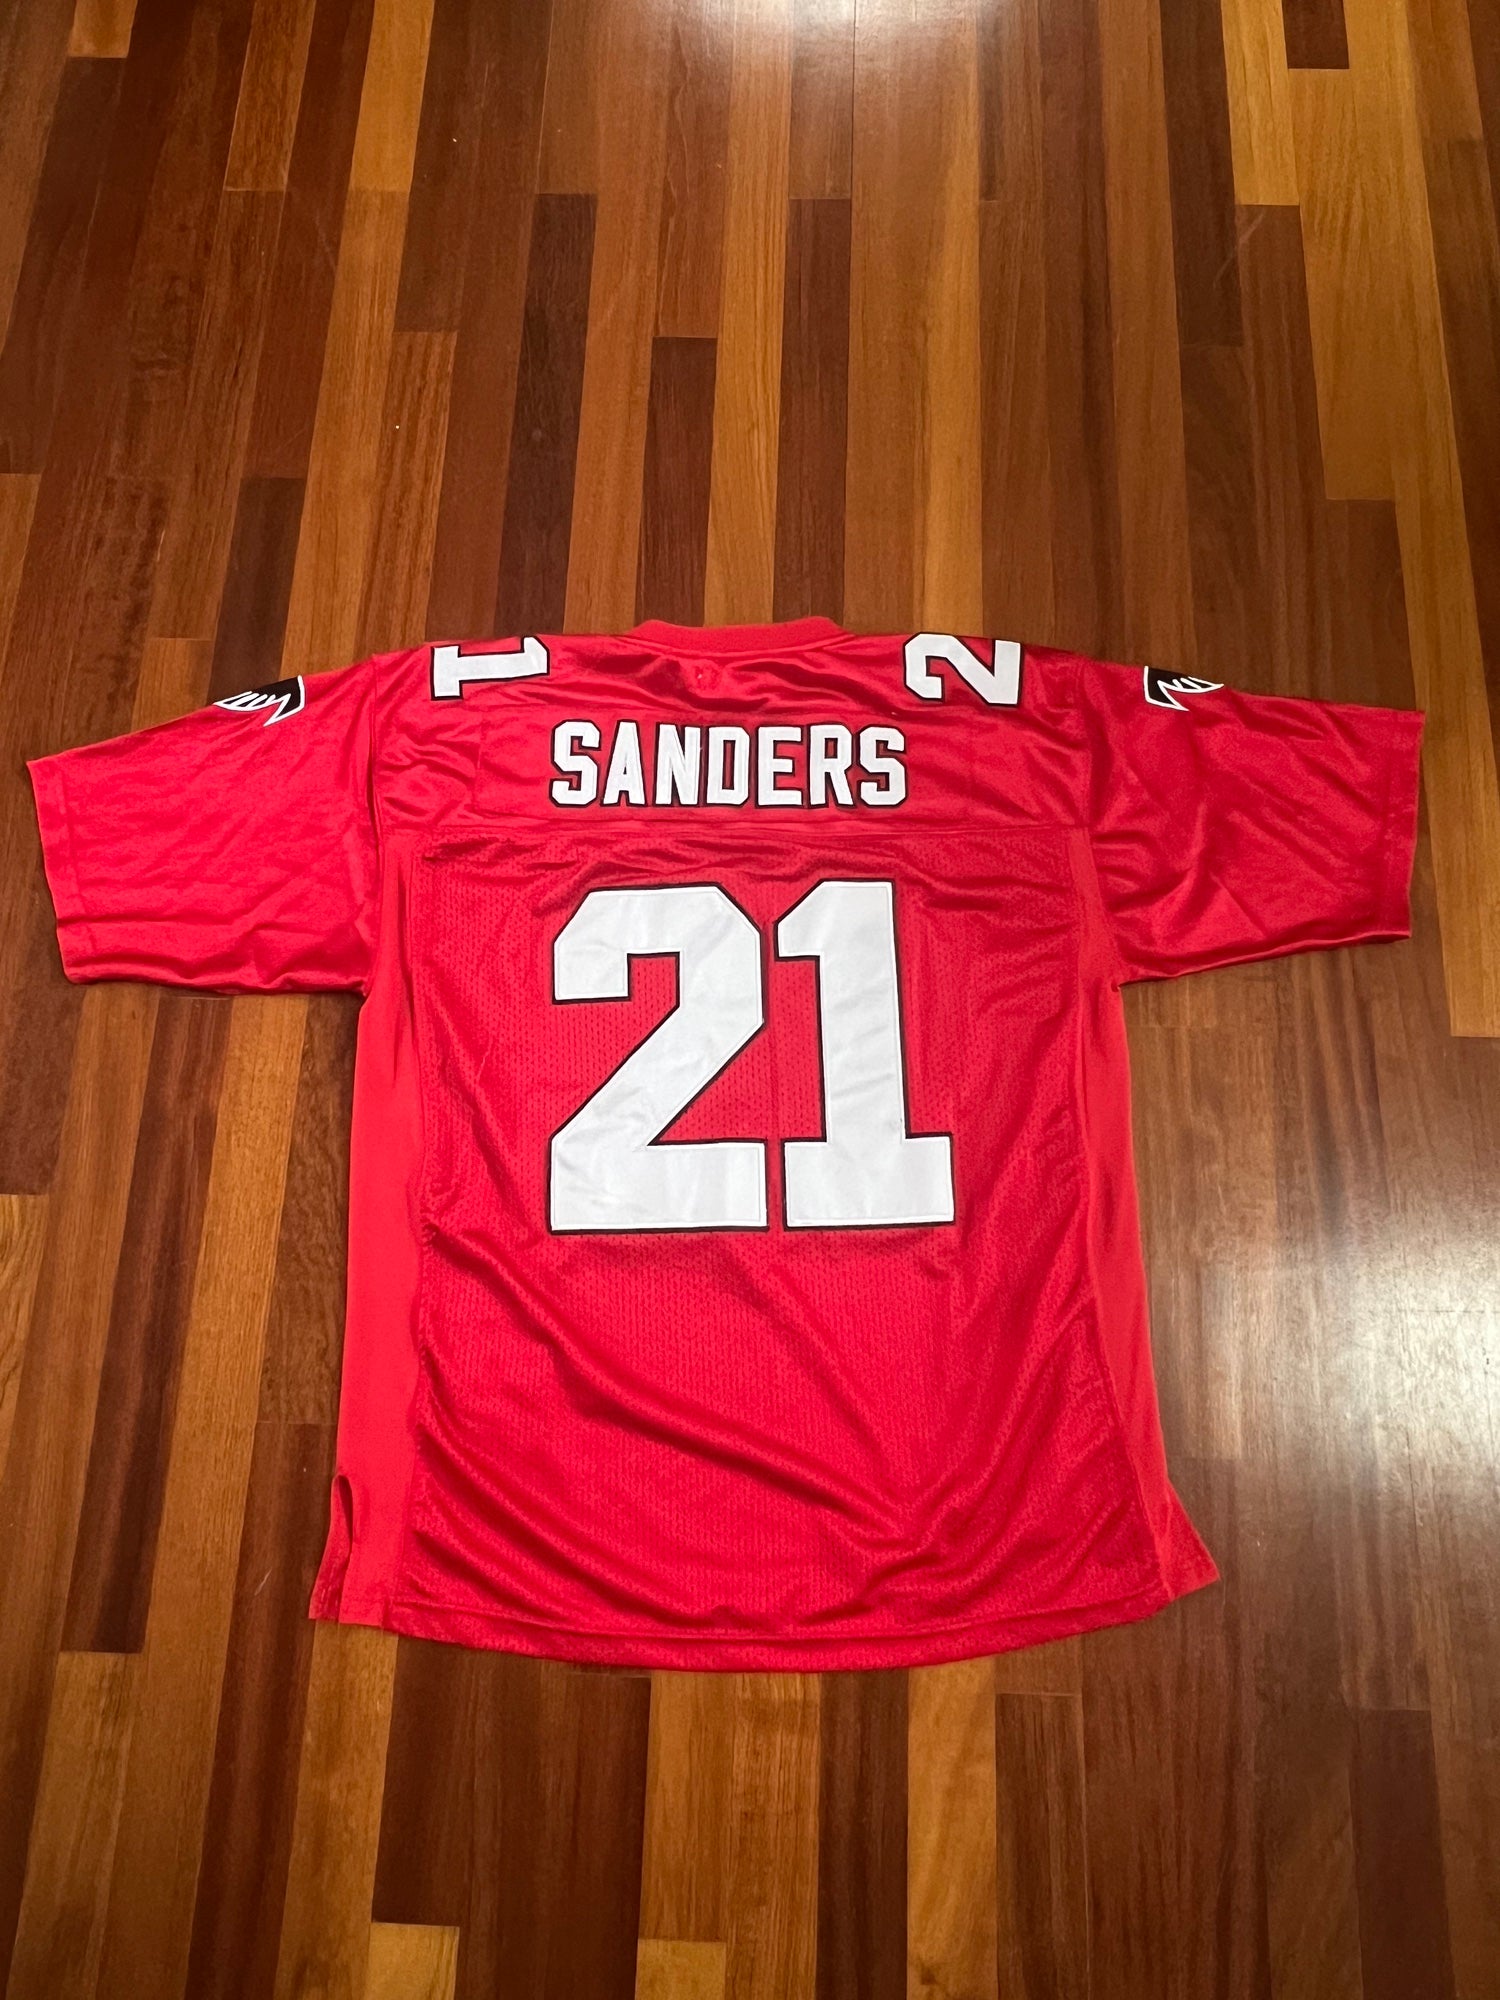 Deion Sanders Jersey for Sale in Atlanta, GA - OfferUp